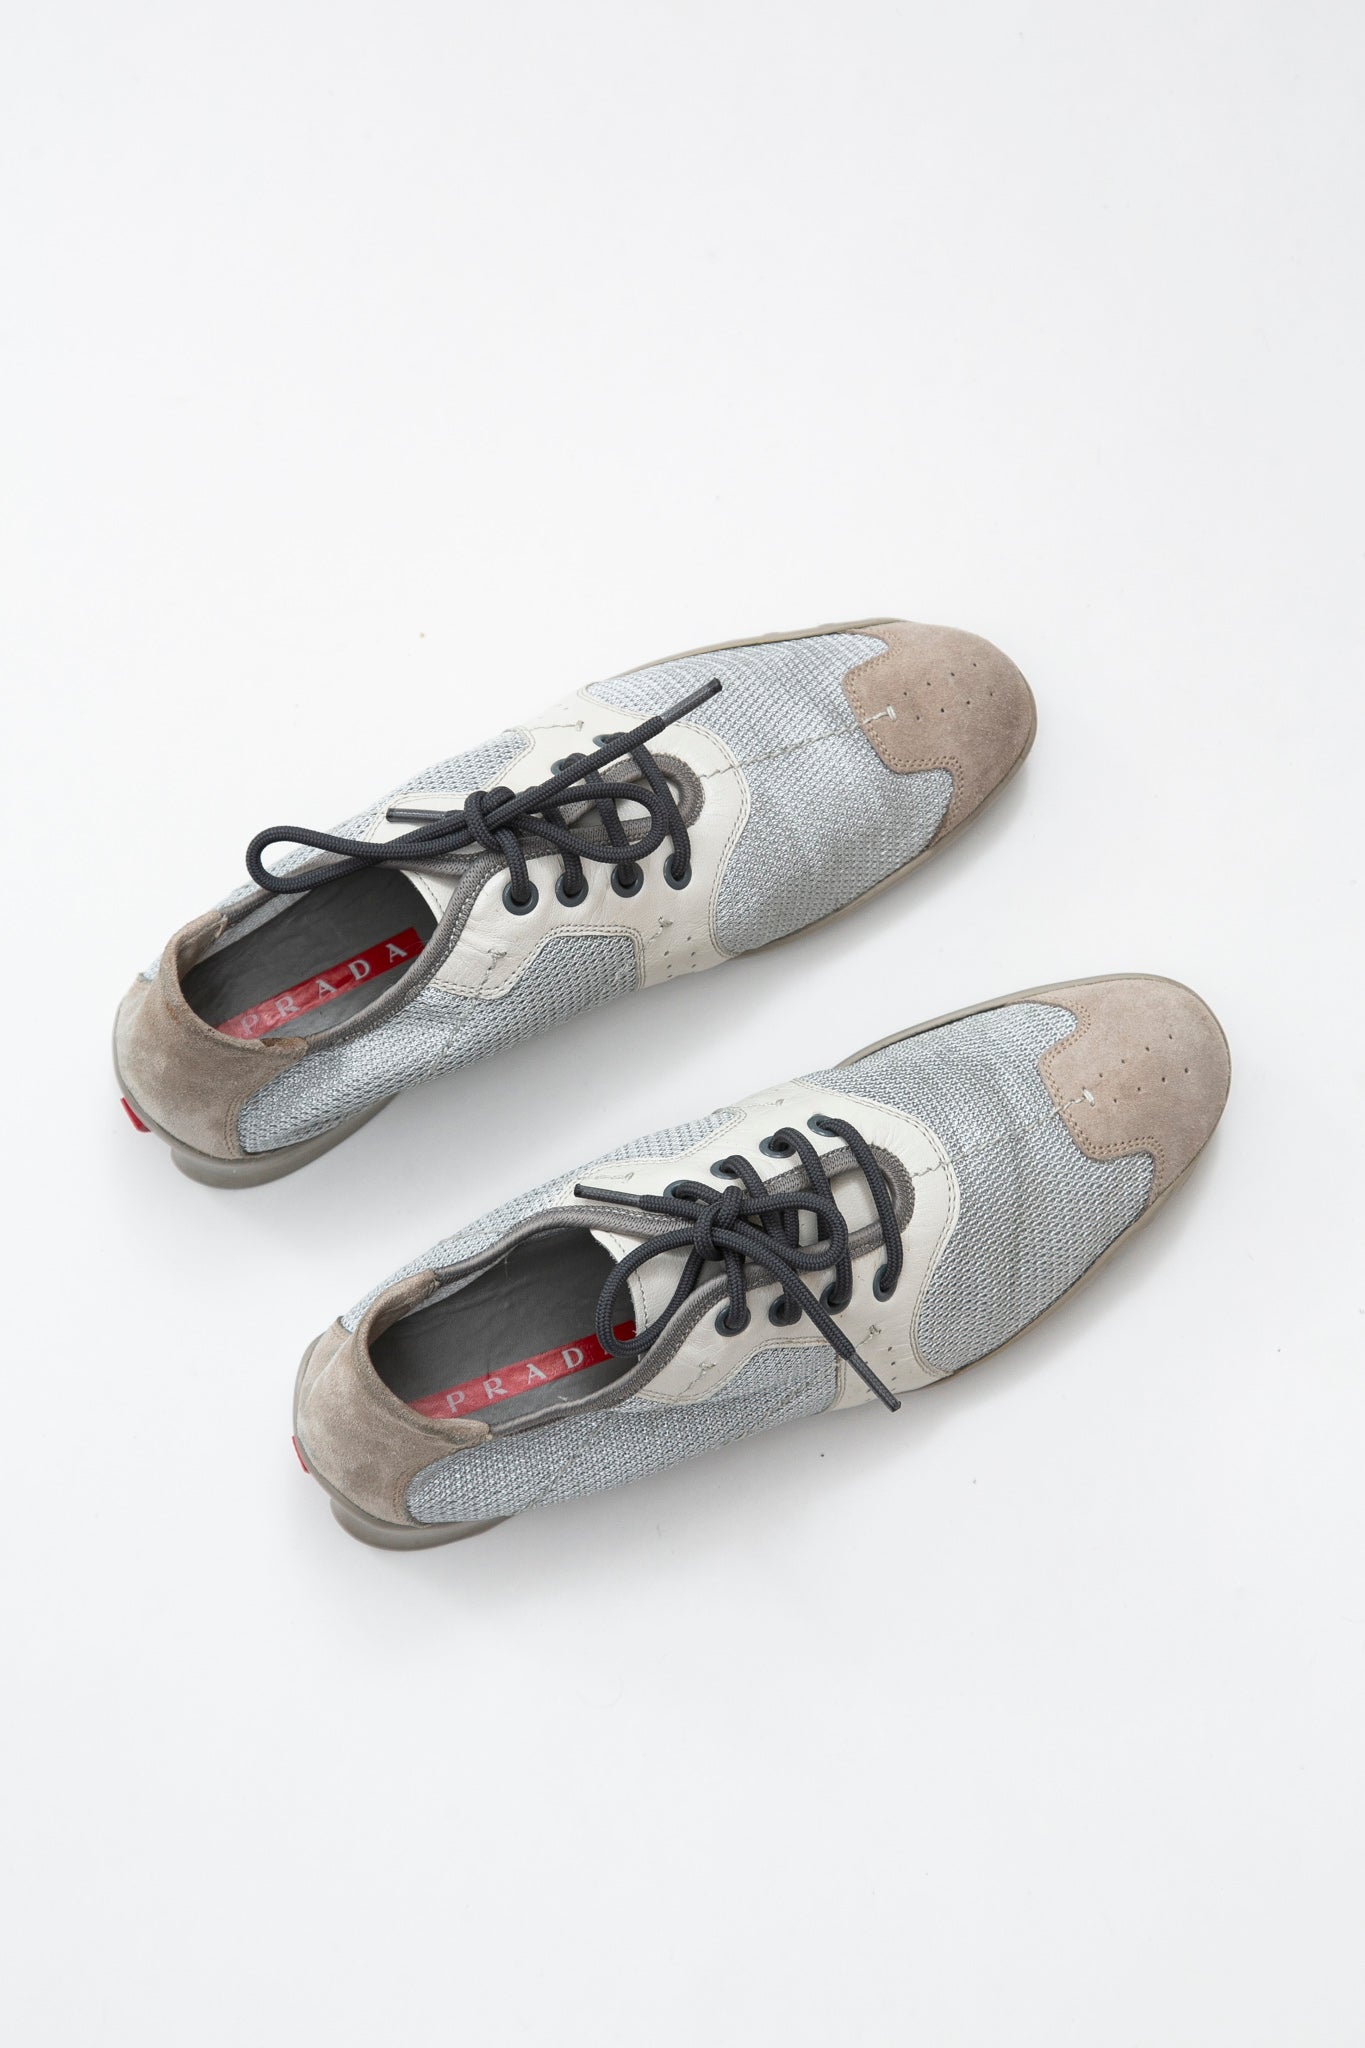 Prada Silver Sneakers